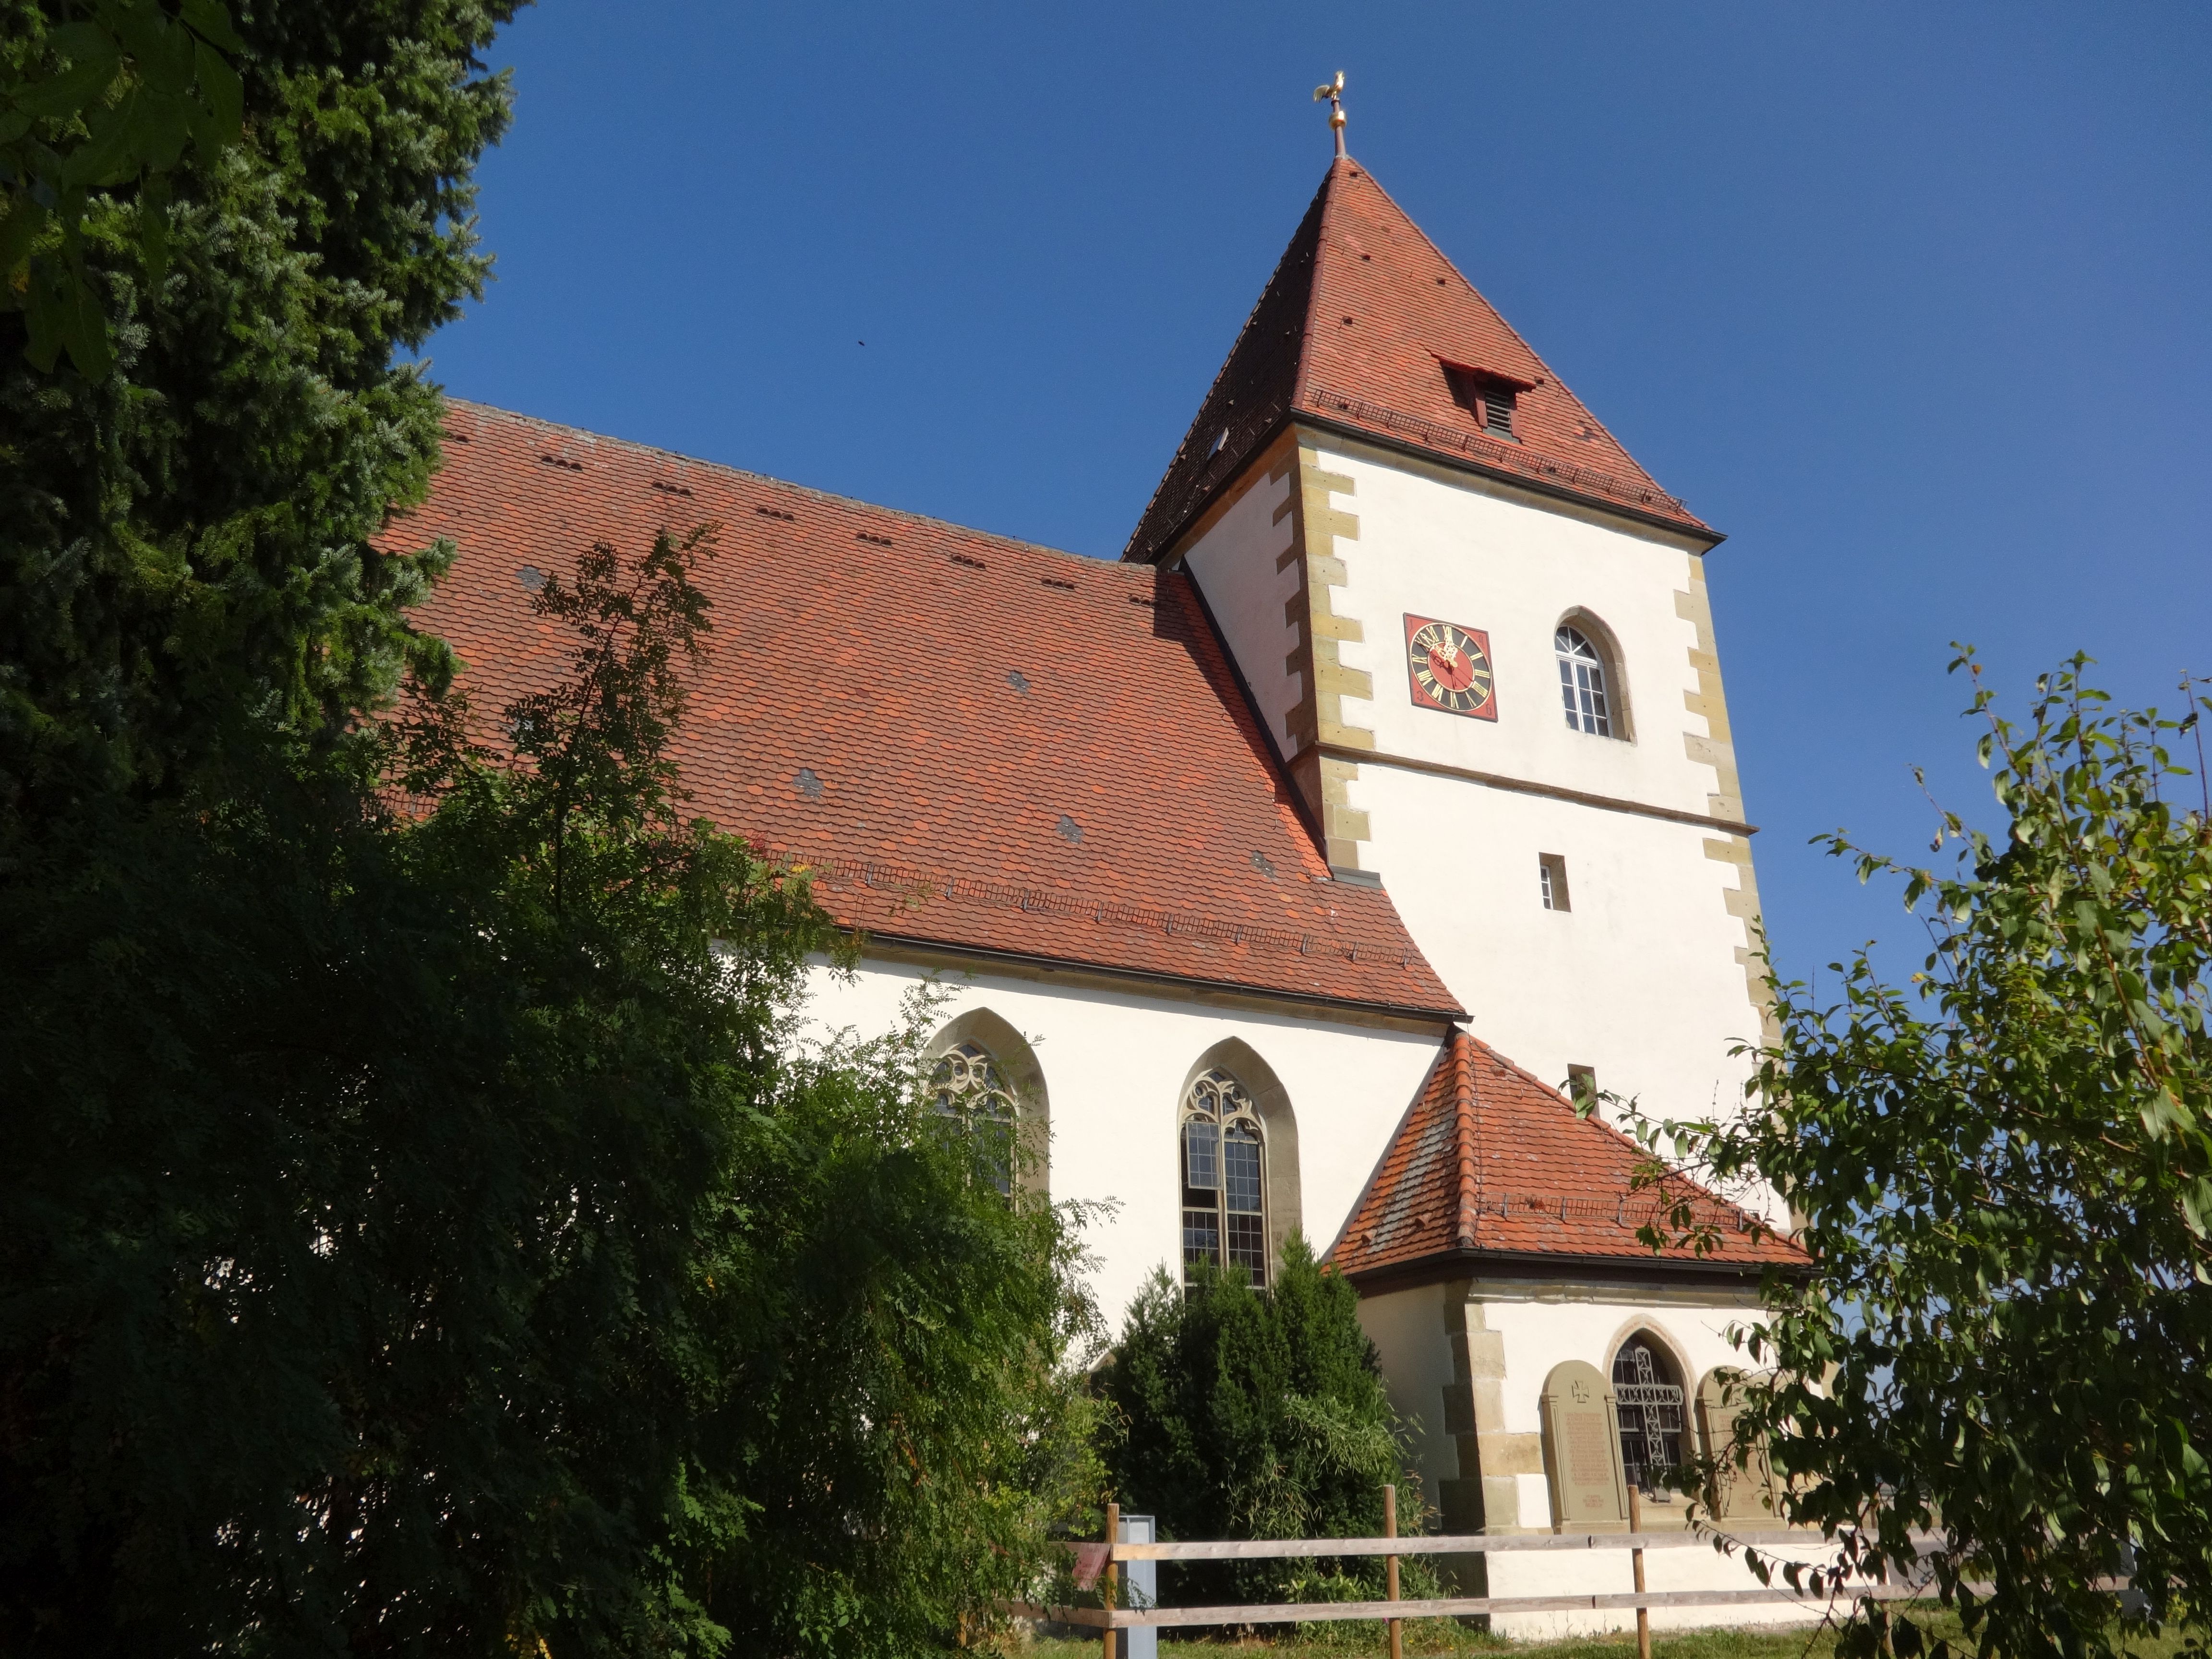 Stephanuskirche - Evangelische Kirchengemeinde Ruppertshofen, Frickenhofer Straße in Ruppertshofen